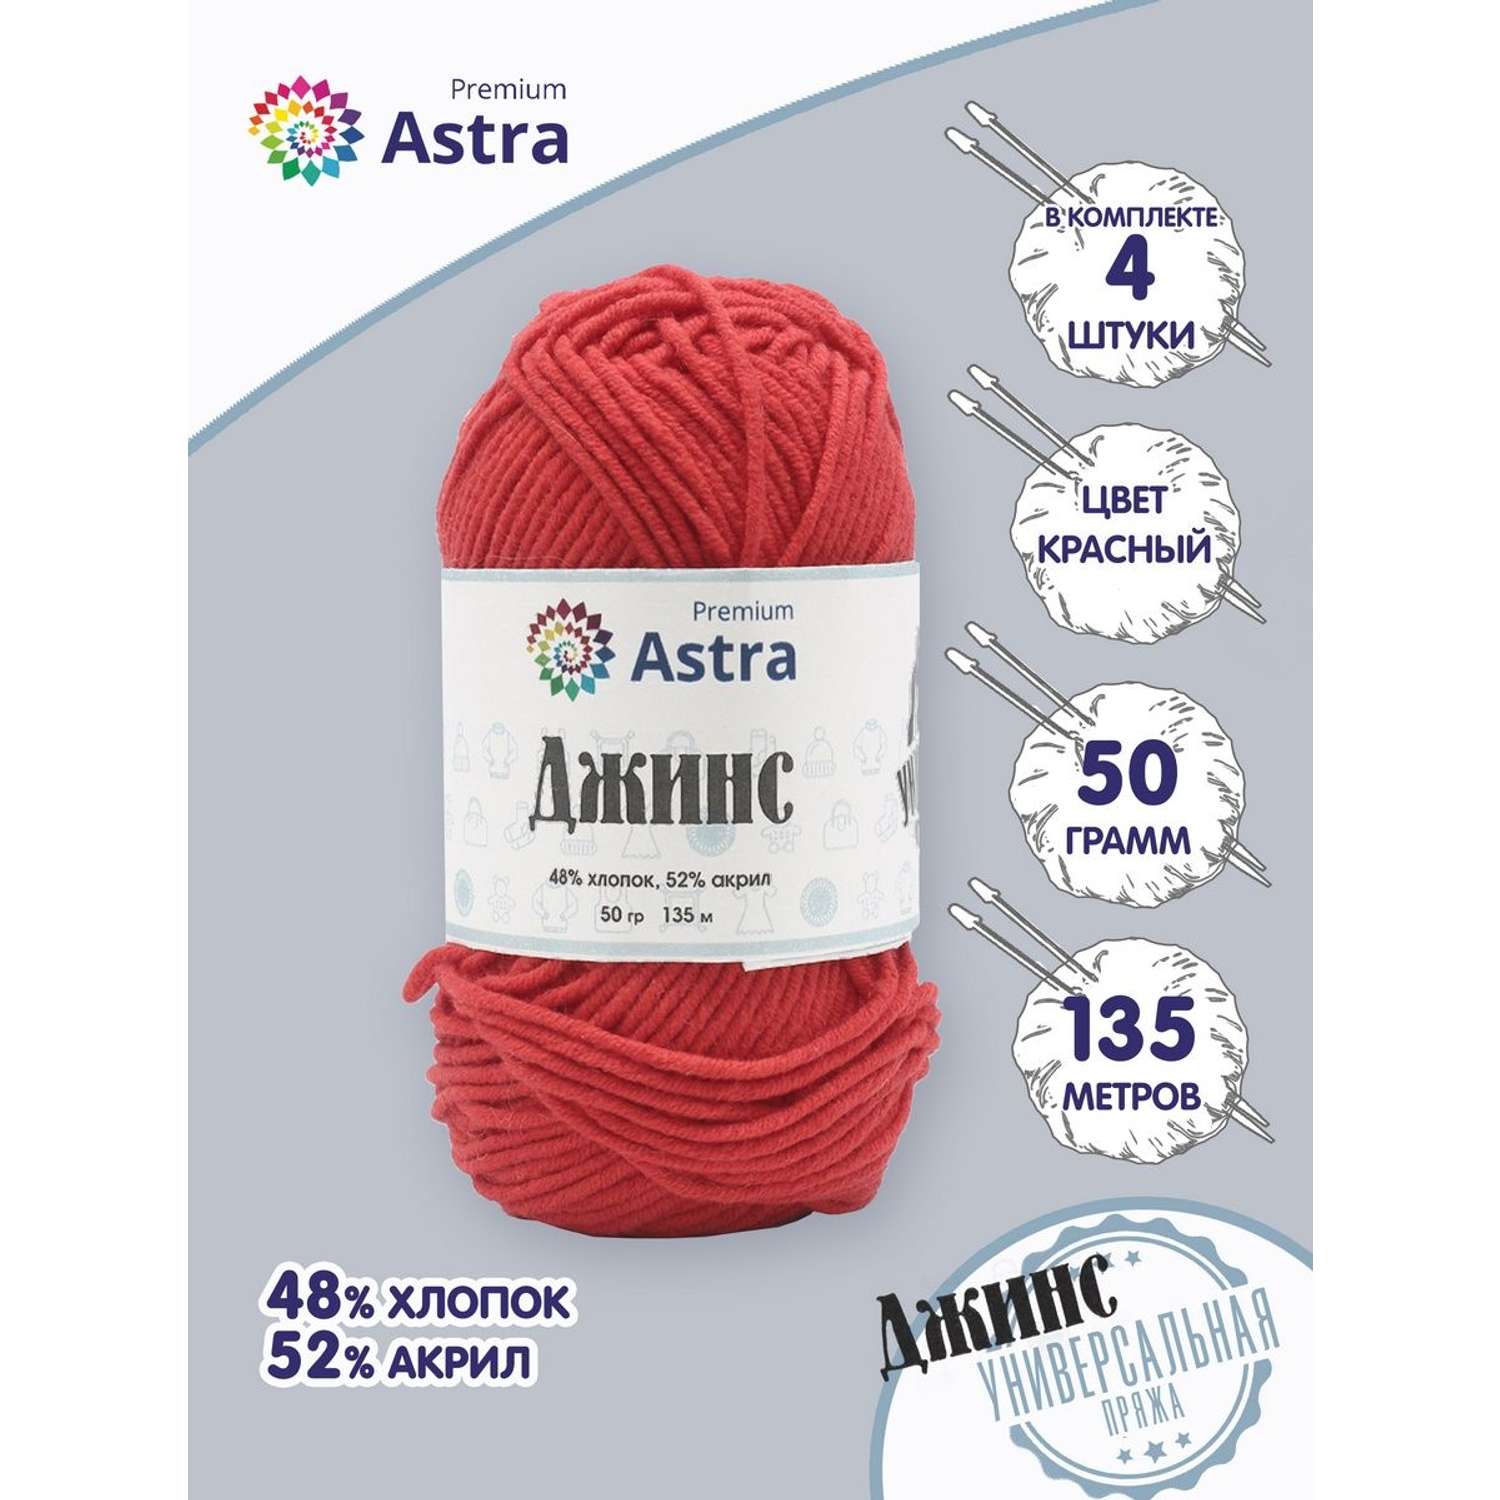 Пряжа для вязания Astra Premium джинс для повседневной одежды акрил хлопок 50 гр 135 м 150 красный 4 мотка - фото 1